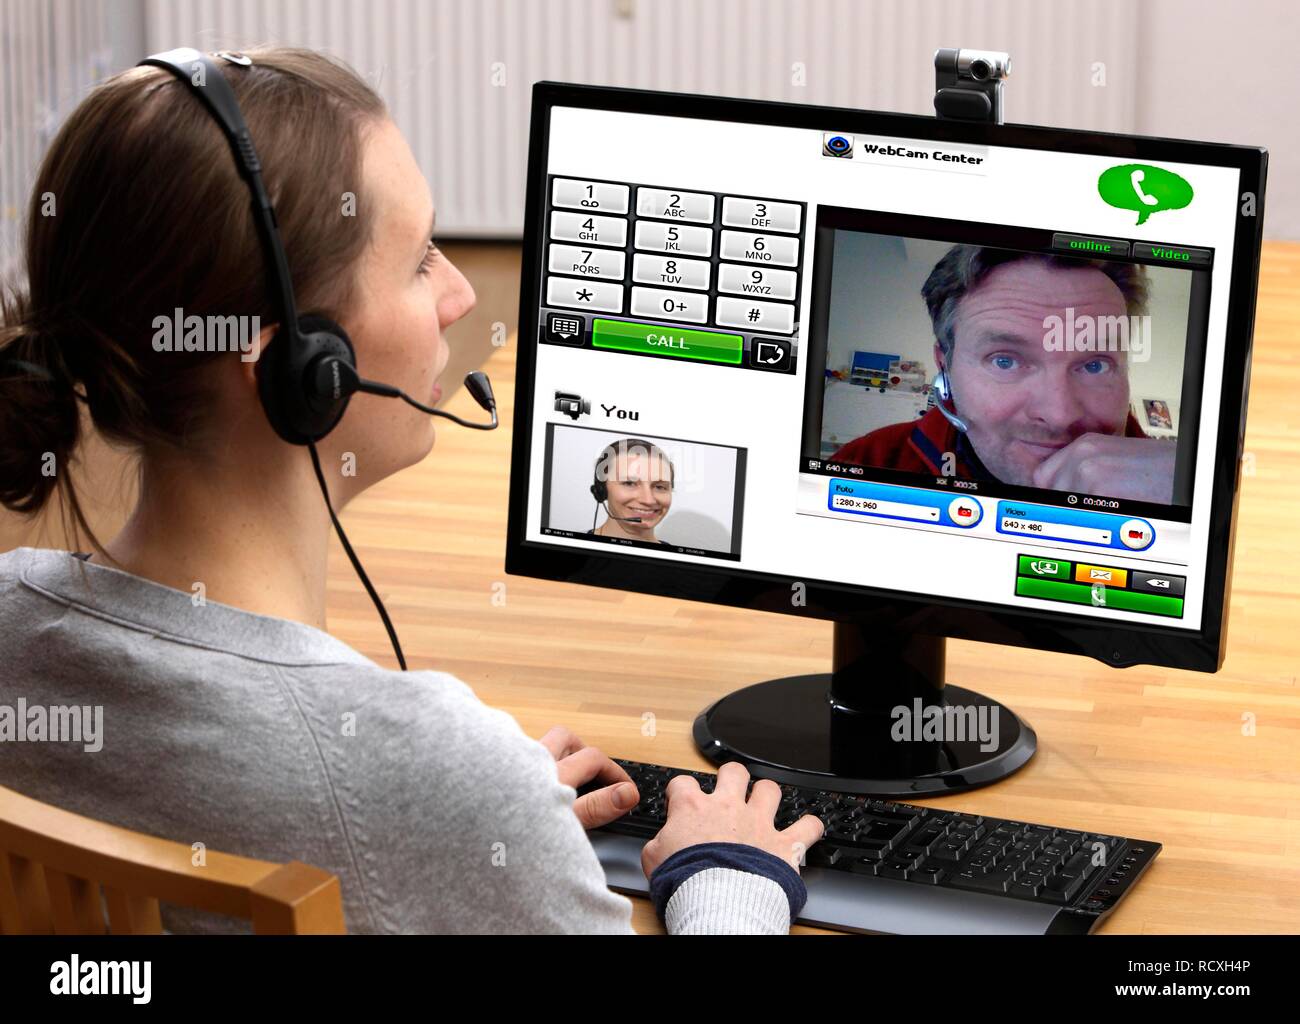 Giovane donna seduta al computer e di effettuare una chiamata via Internet, via webcam con le immagini live di entrambi Foto Stock